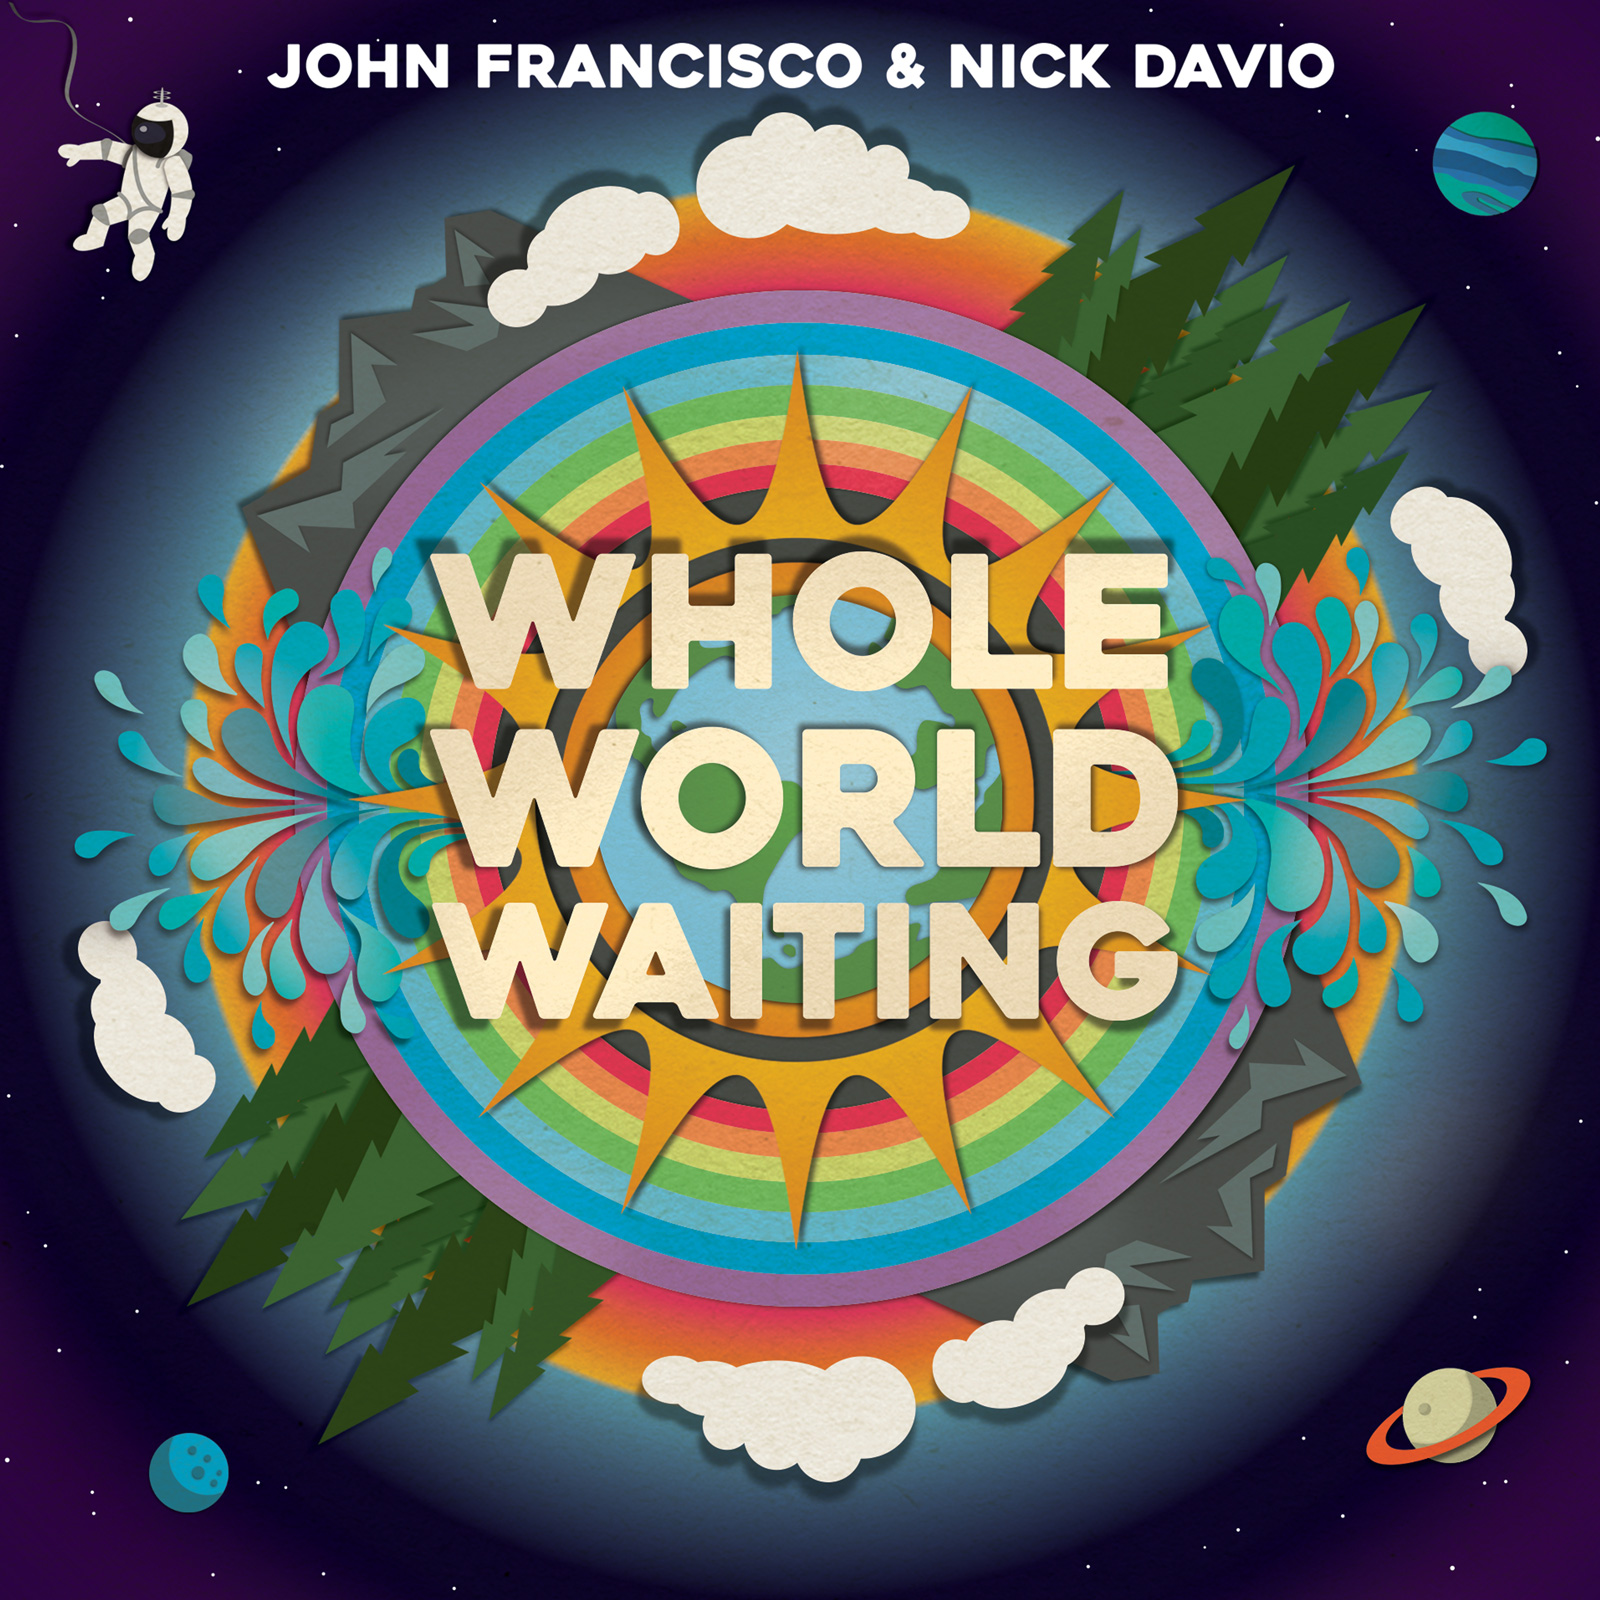 John Francisco & Nick Davio's song WHOLE WORLD WAITING